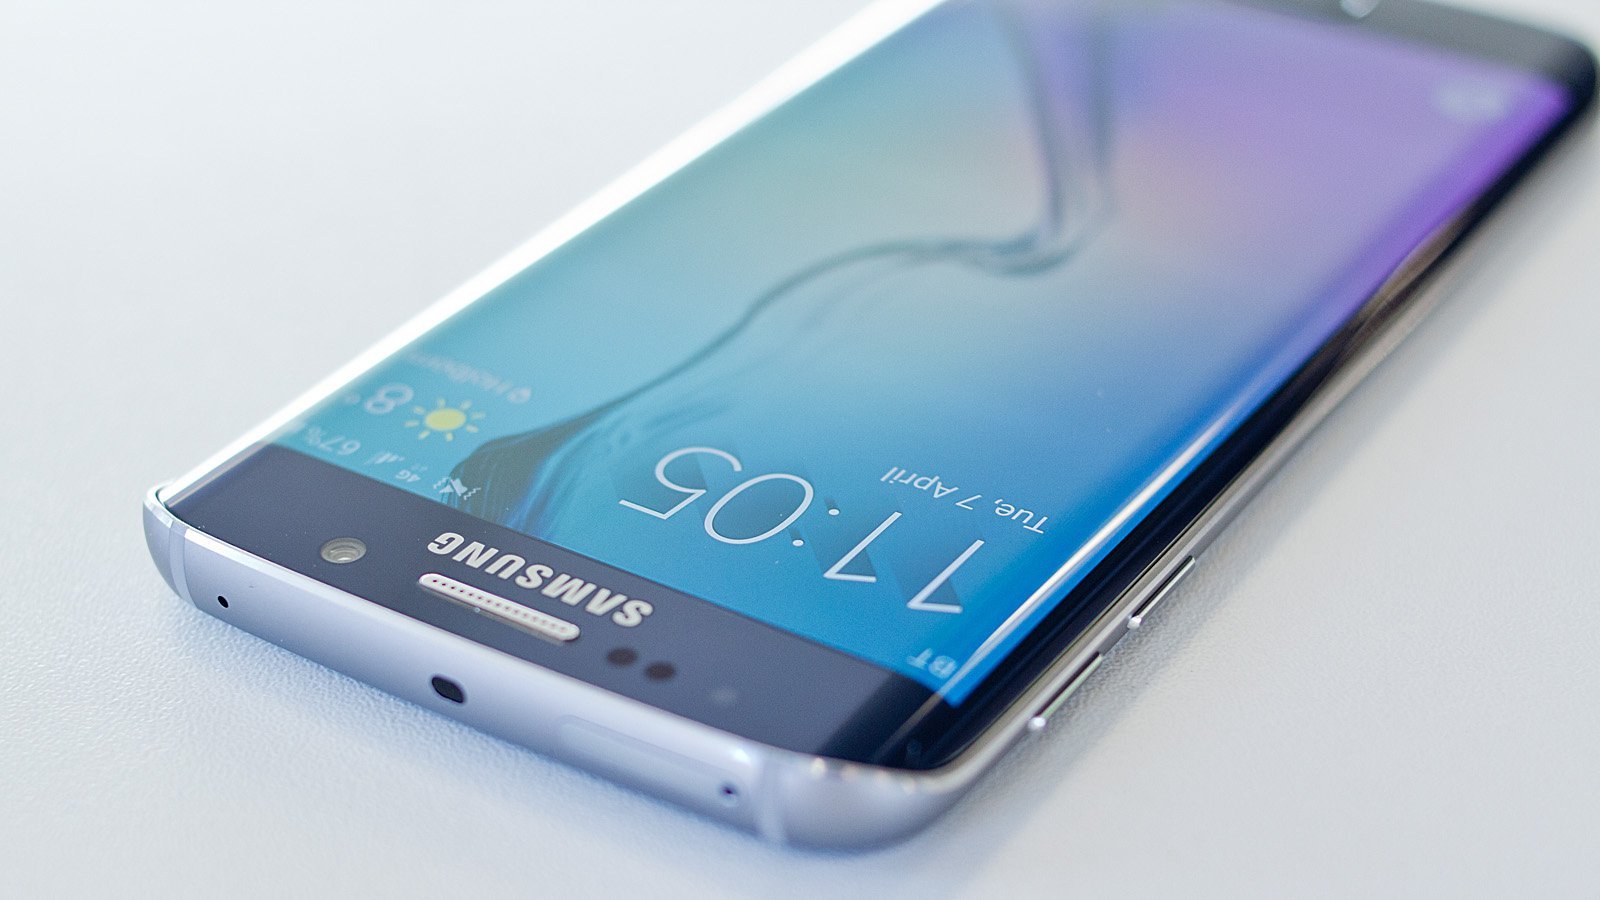 รวบรวมทุกสิ่งที่รู้เกี่ยวกับ Galaxy S7 ก่อนเปิดตัวในงาน MWC 2016